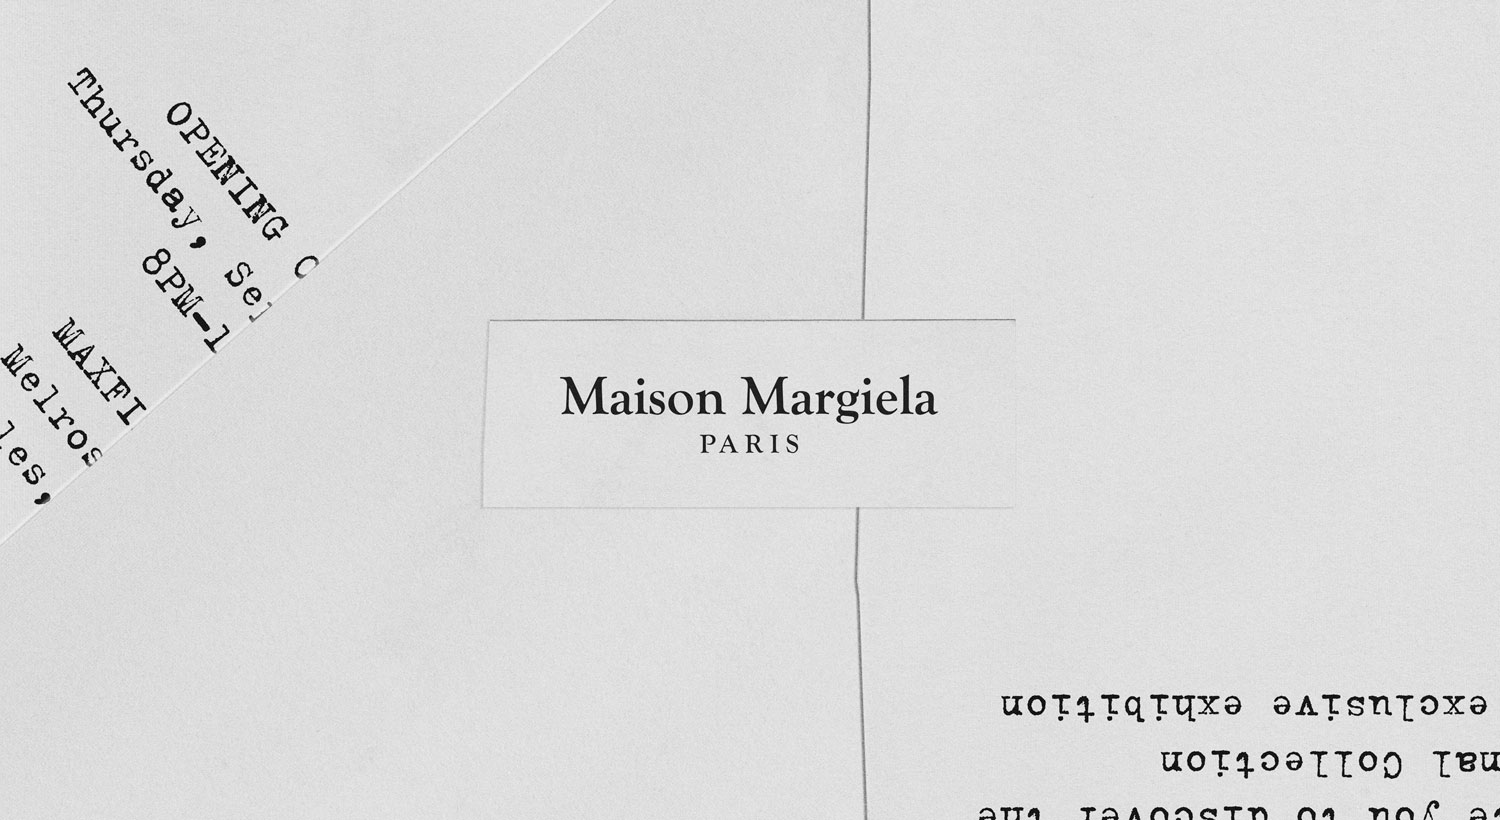 Maison Margiela Invite